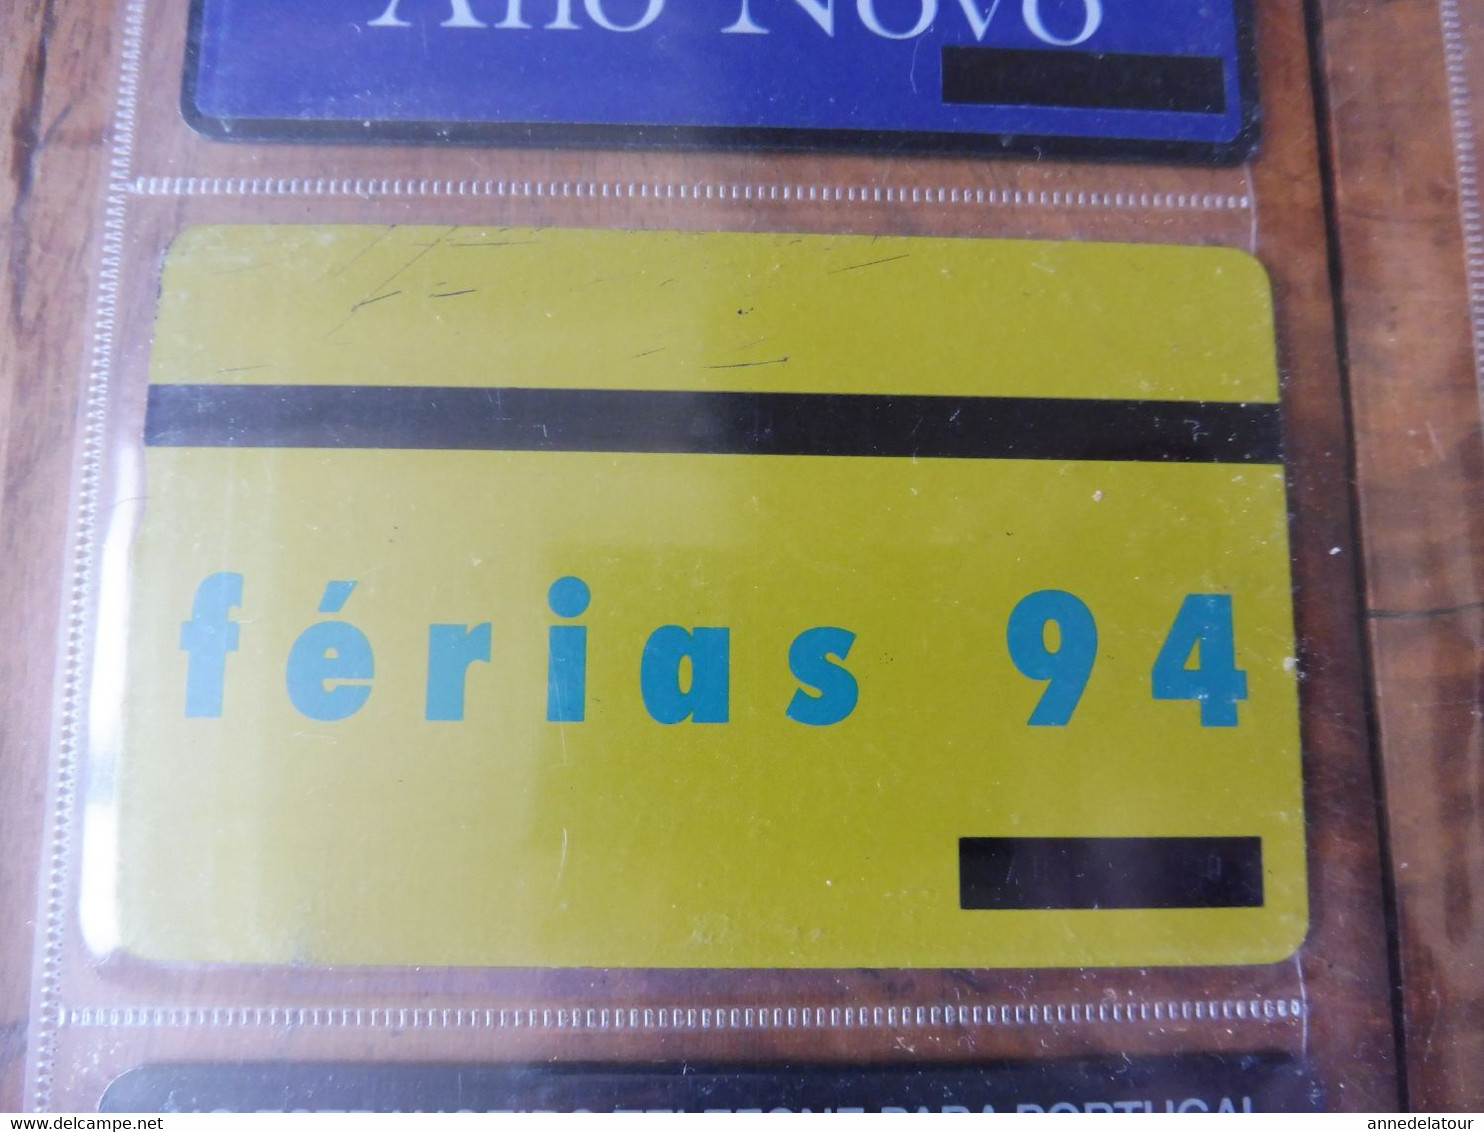 7 télécartes (cartes téléphoniques) origine TELECOM PORTUGAL